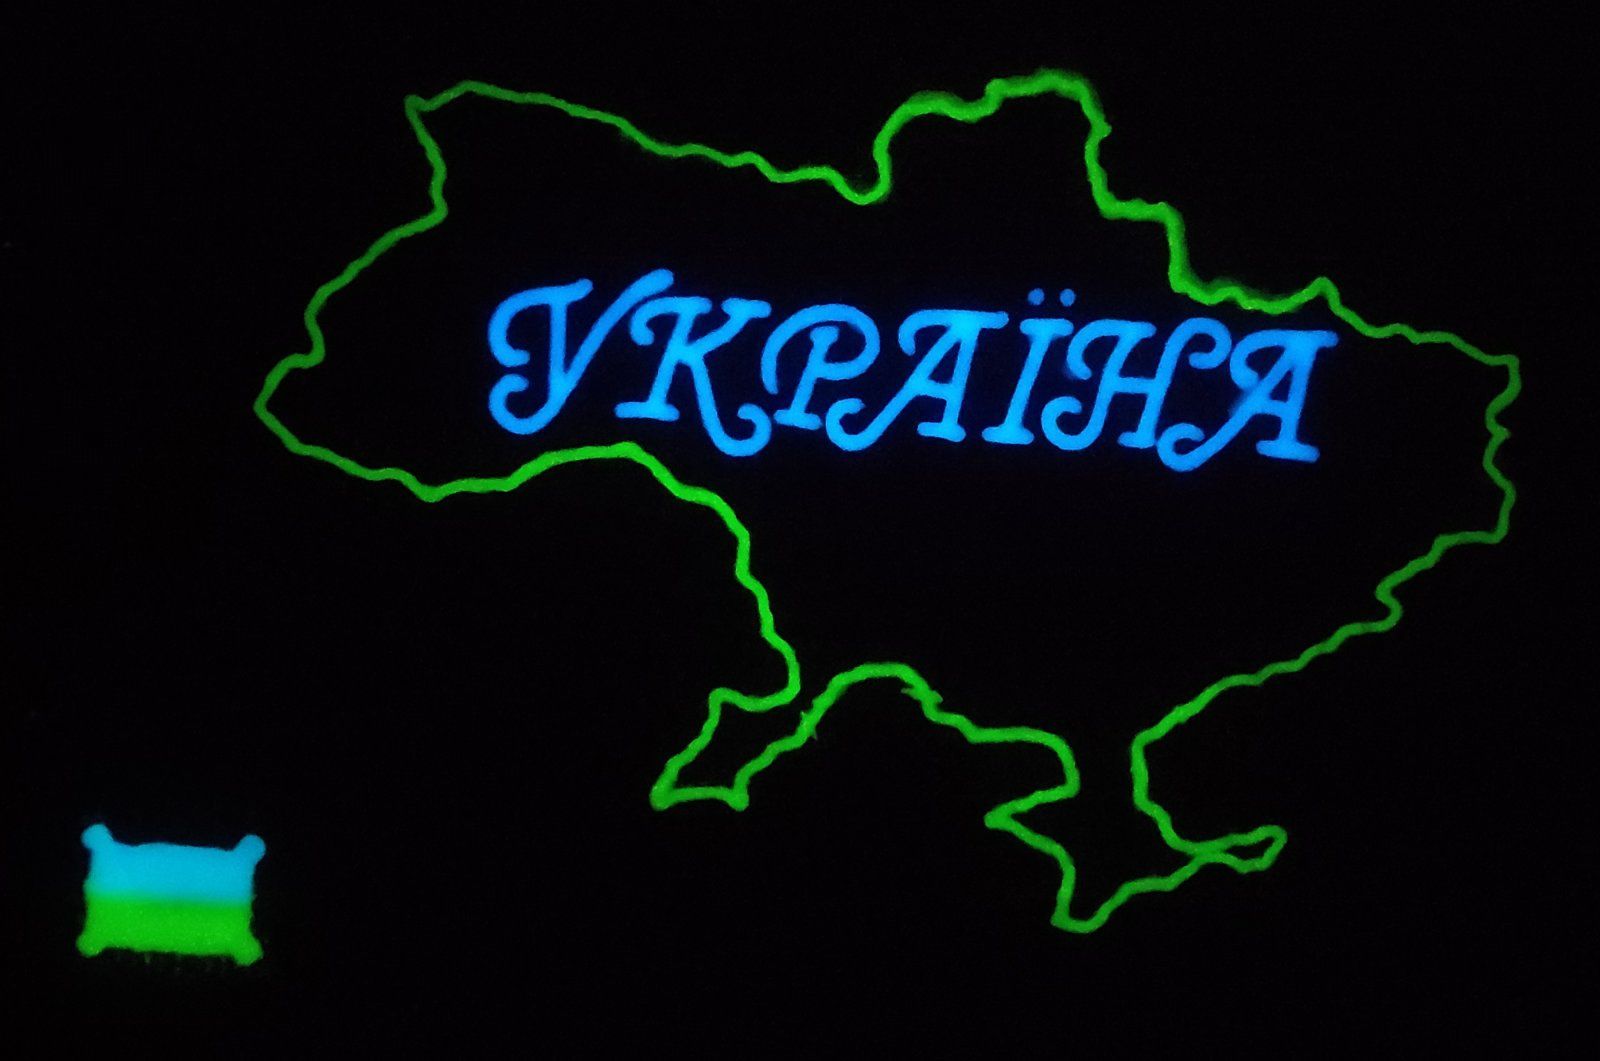 Карта Украины светящаяся в темноте